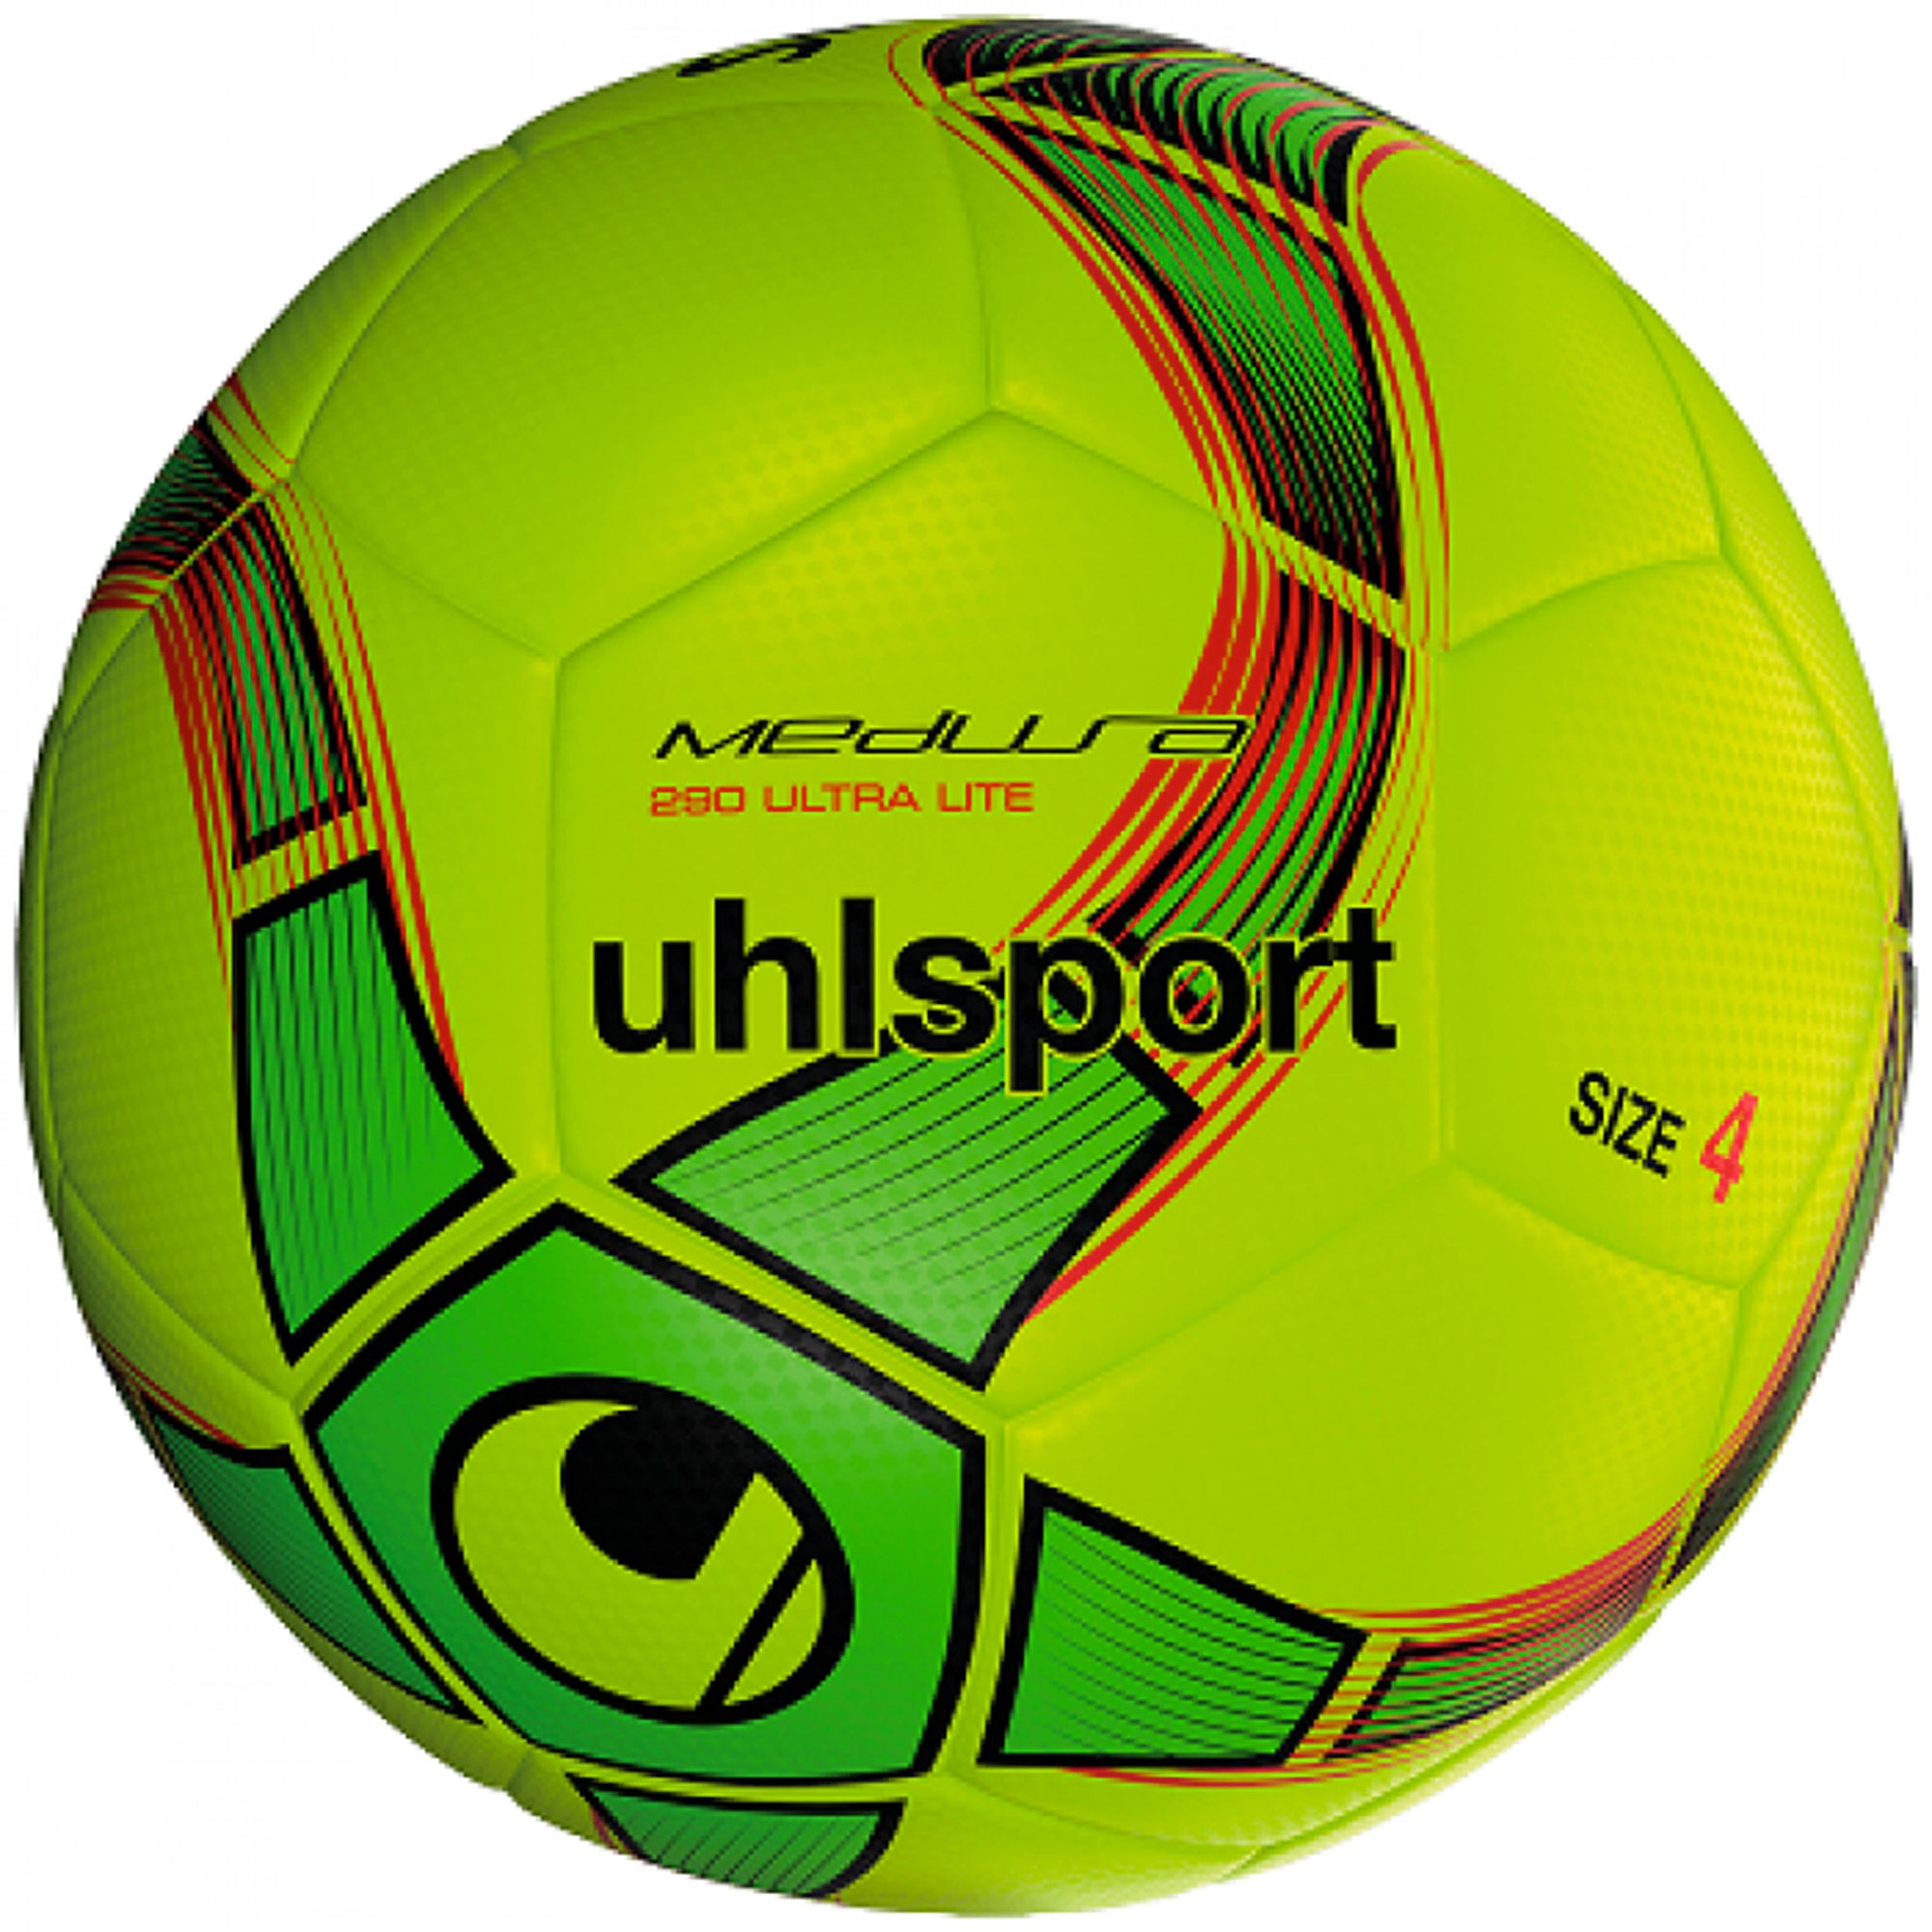 Uhlsport Medusa 290 Anteo Ultralite Futsal ballon de soccer intérieur - Jaune / Vert